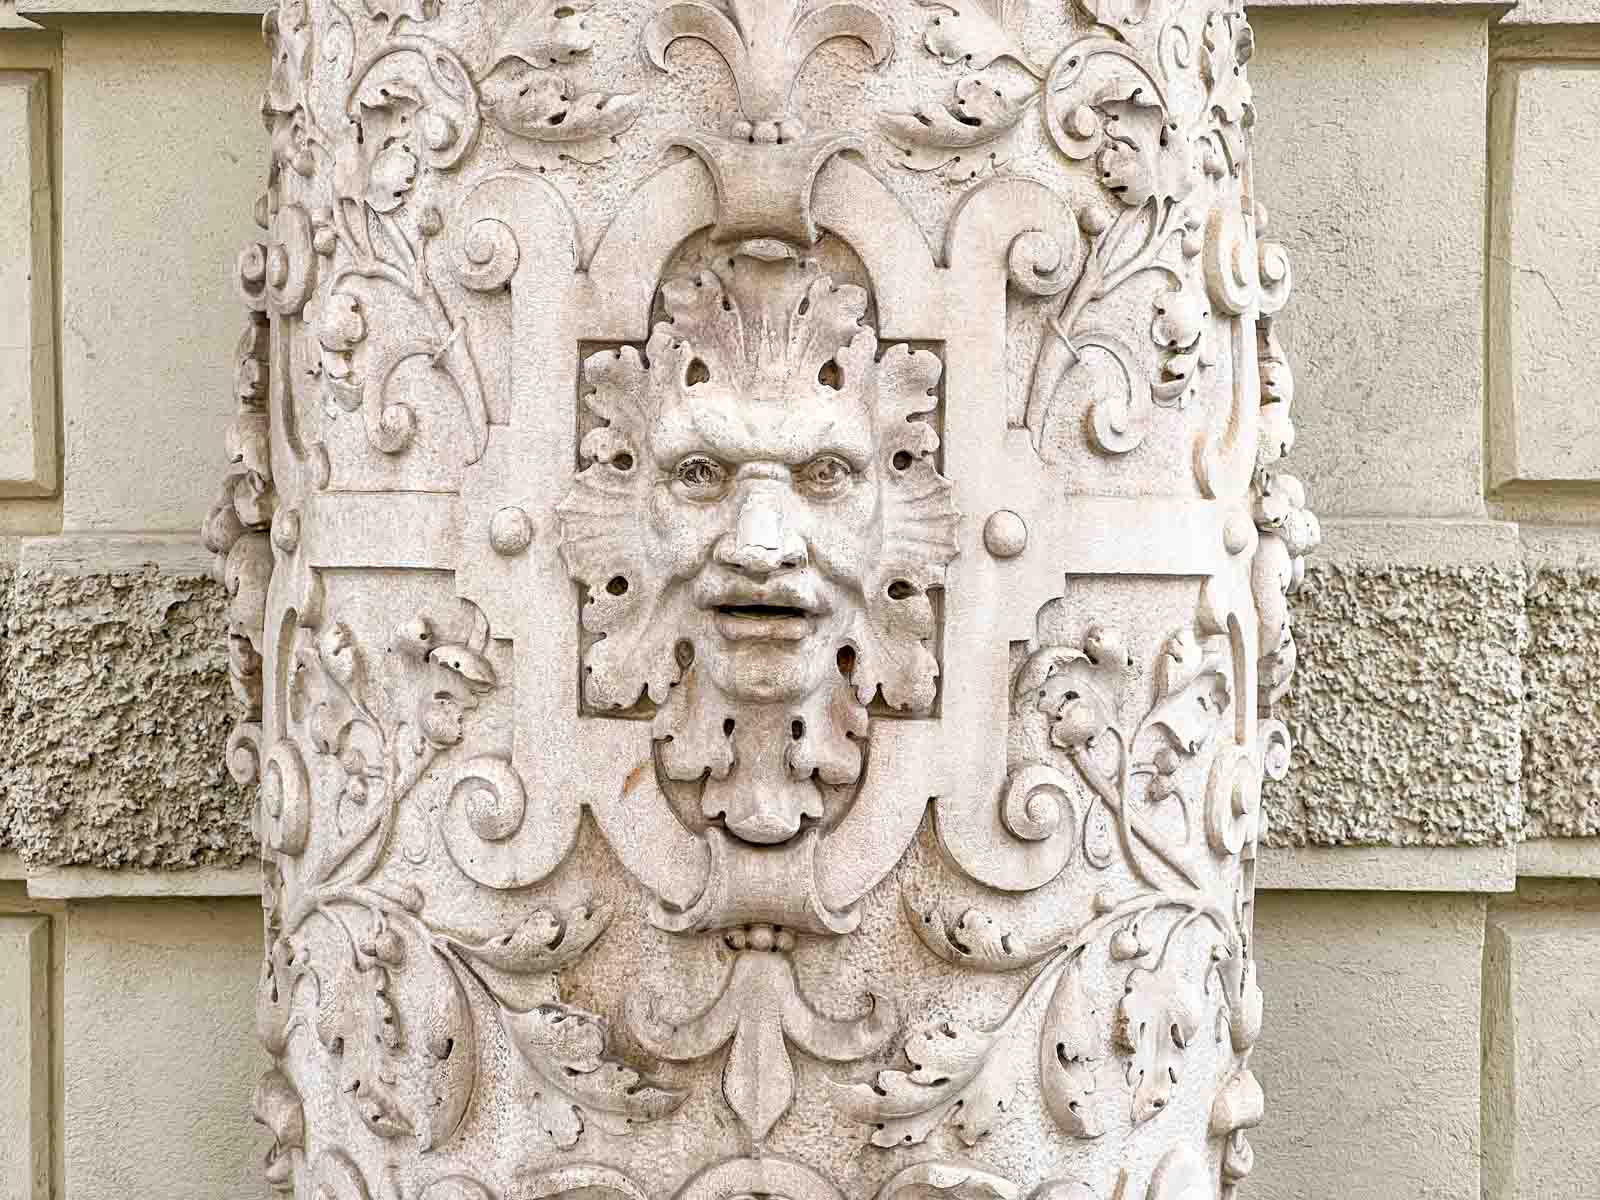 Carving in Graz